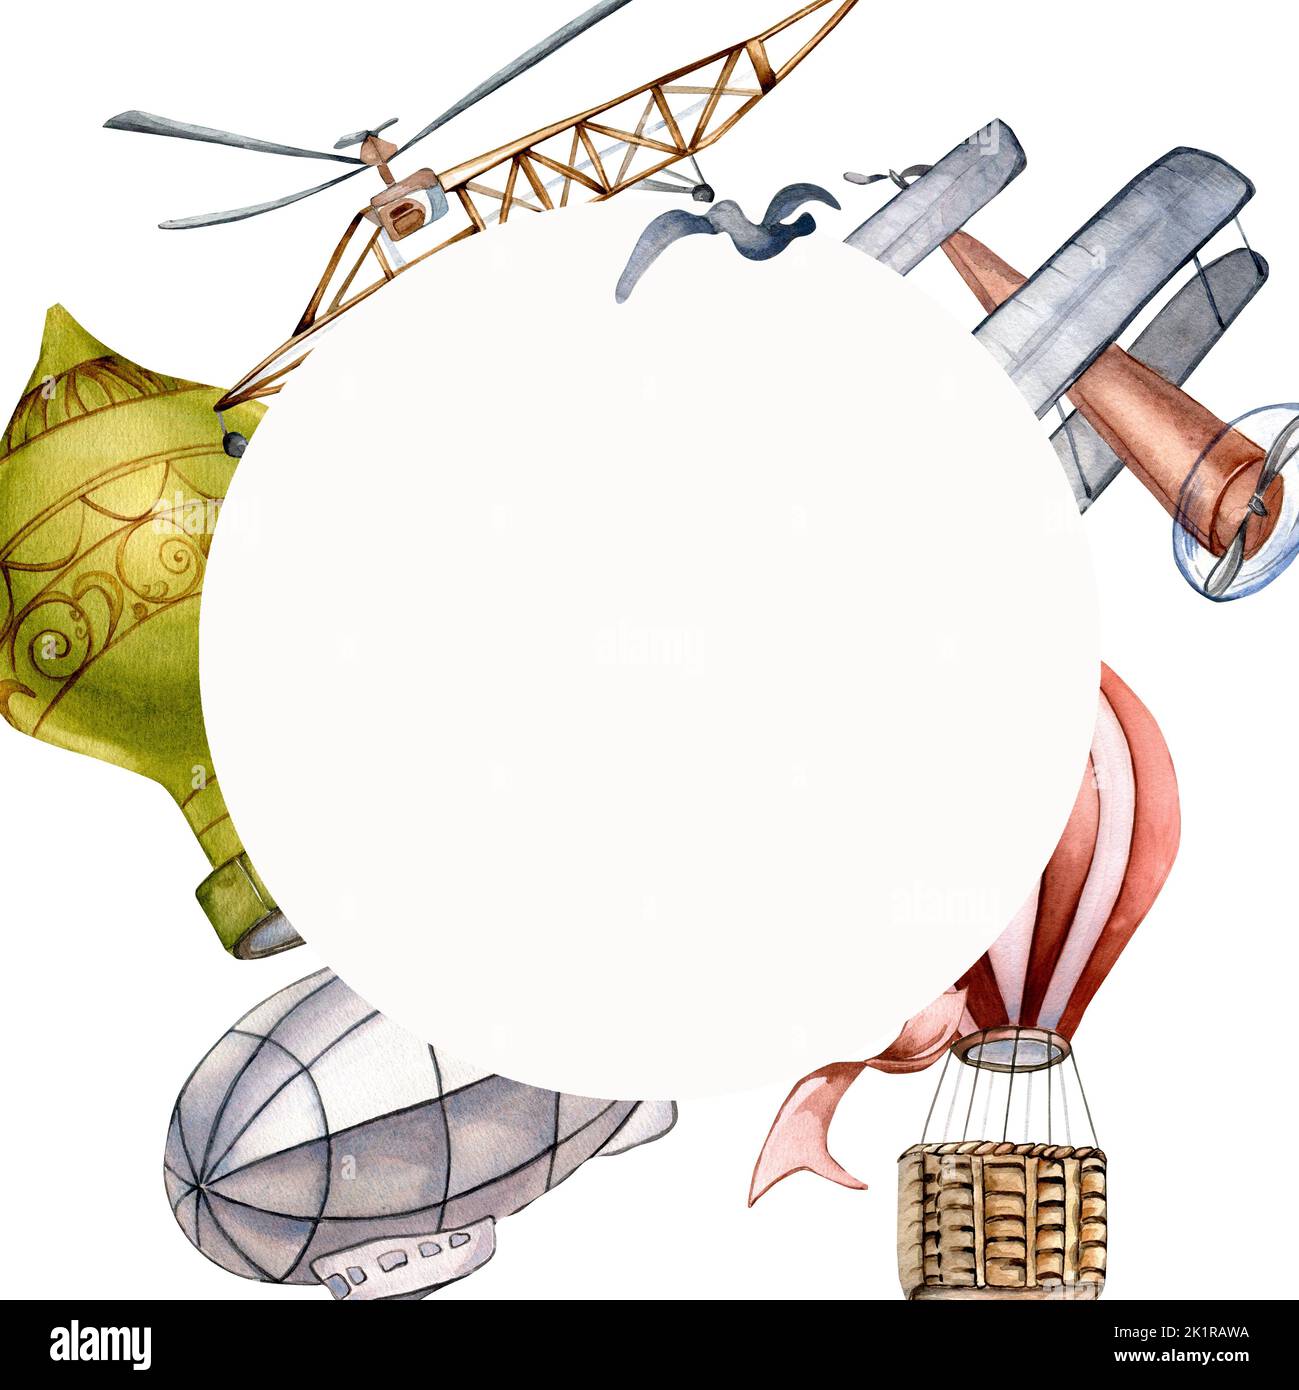 Cornice circolare dell'illustrazione di acquerello di trasporto retro isolato su fondo bianco. Elicottero, dirigibile, palloncino ad aria calda, corona di vetro Foto Stock